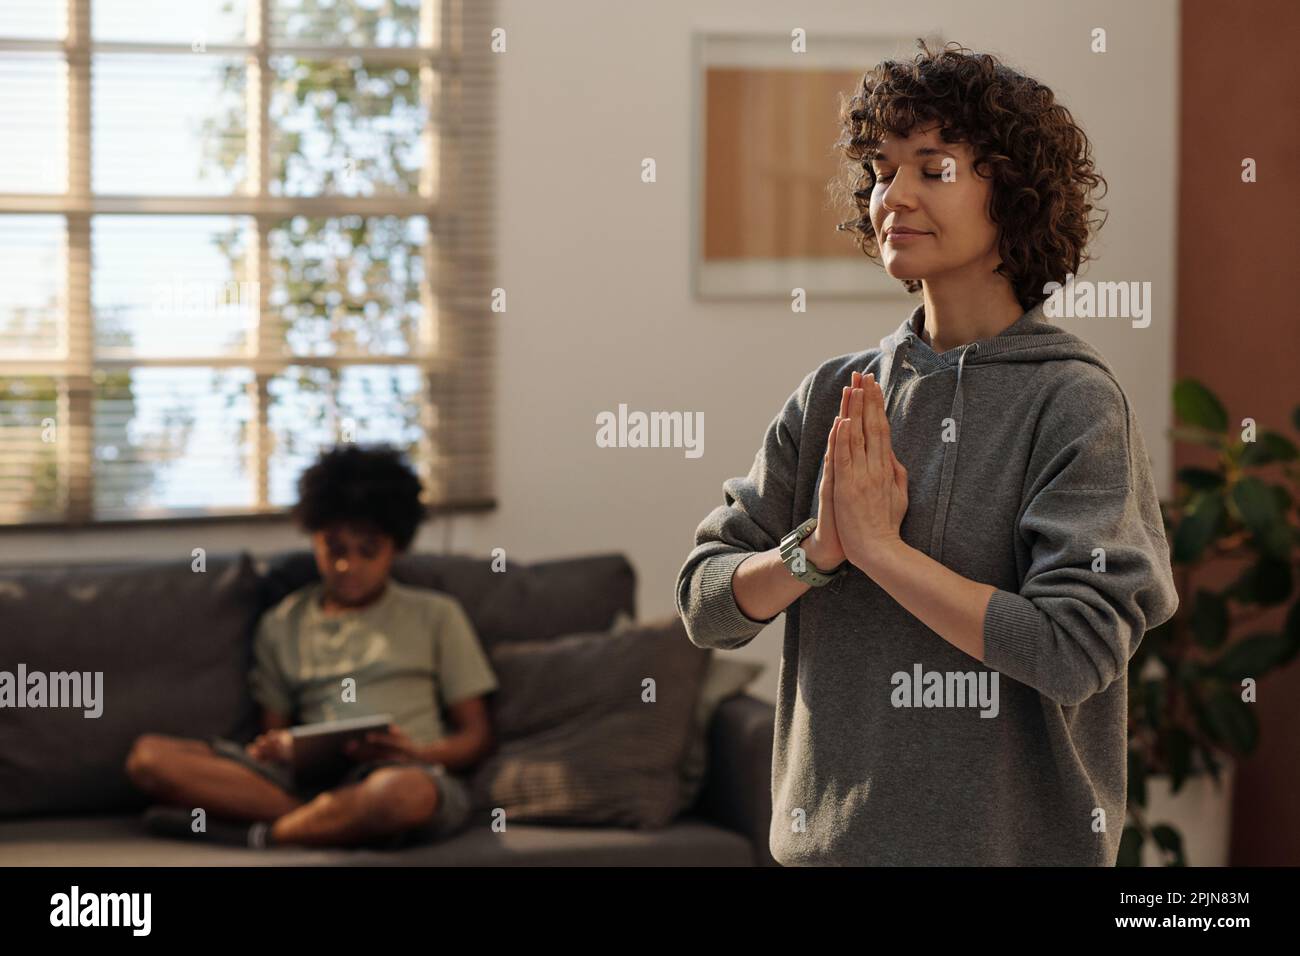 Junge, entspannte Frau in grauem Hoodie, die während des Yoga-Trainings die Hände zusammenhält, während sie zu Hause vor der Kamera steht Stockfoto